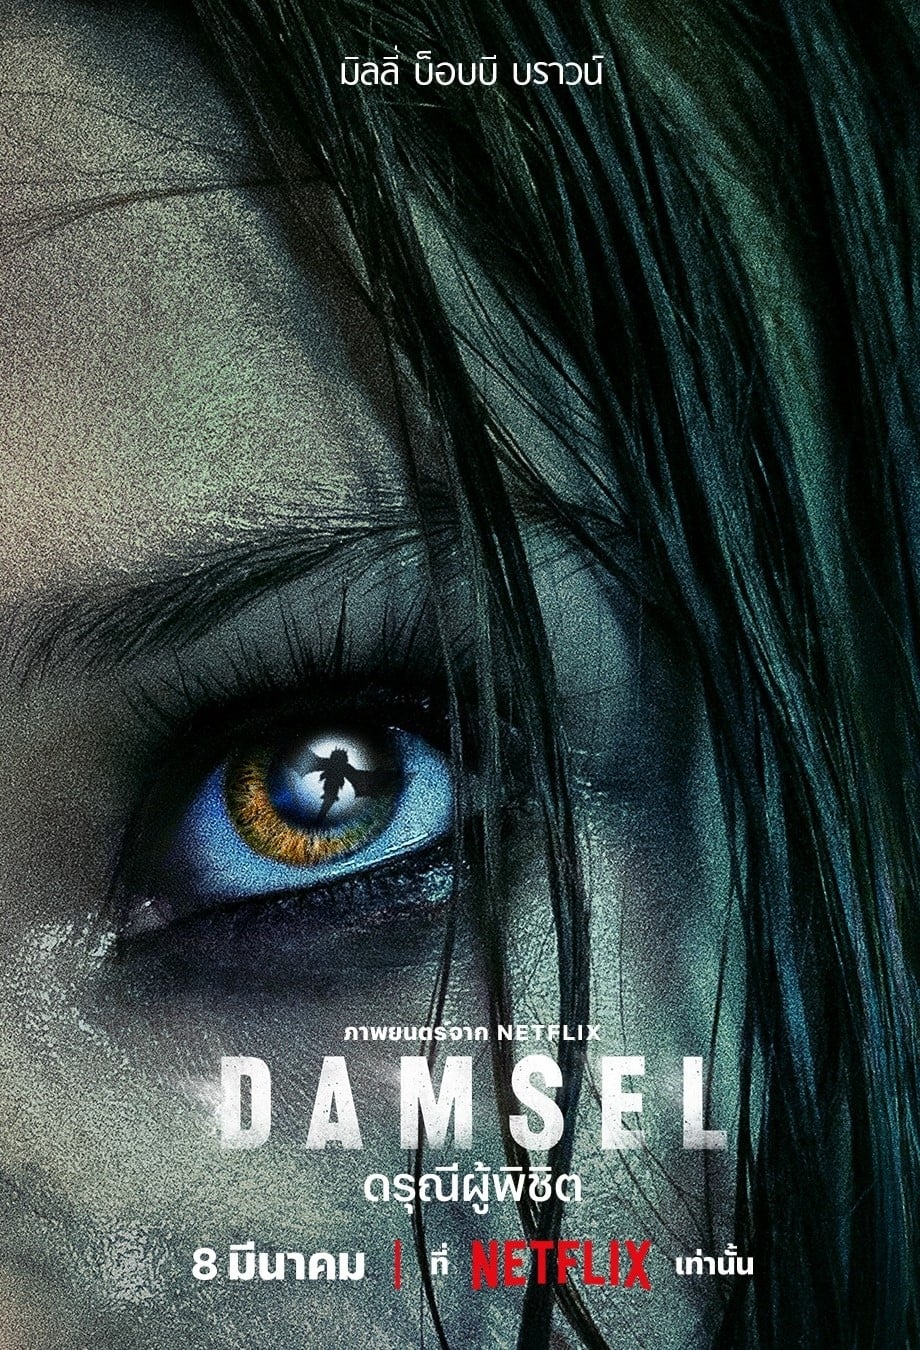 ดูหนังเรื่อง Damsel - ดรุณีผู้พิชิต